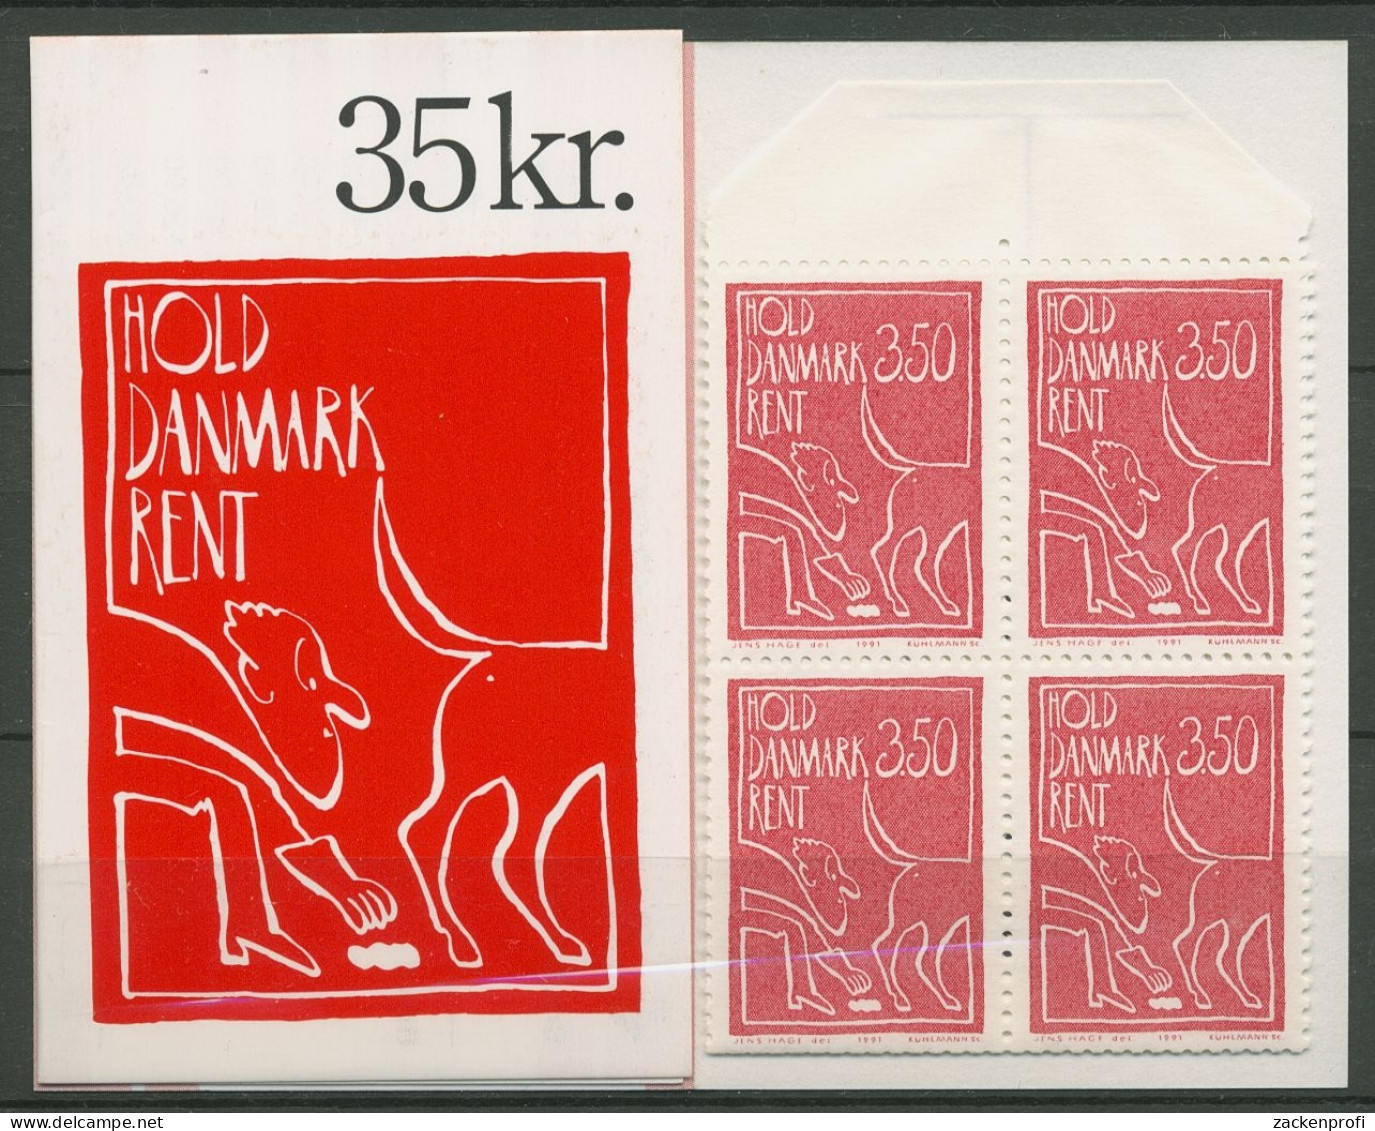 Dänemark 1991 Sauberes Dänemark Markenheftchen 1010 MH Postfrisch (C93041) - Cuadernillos